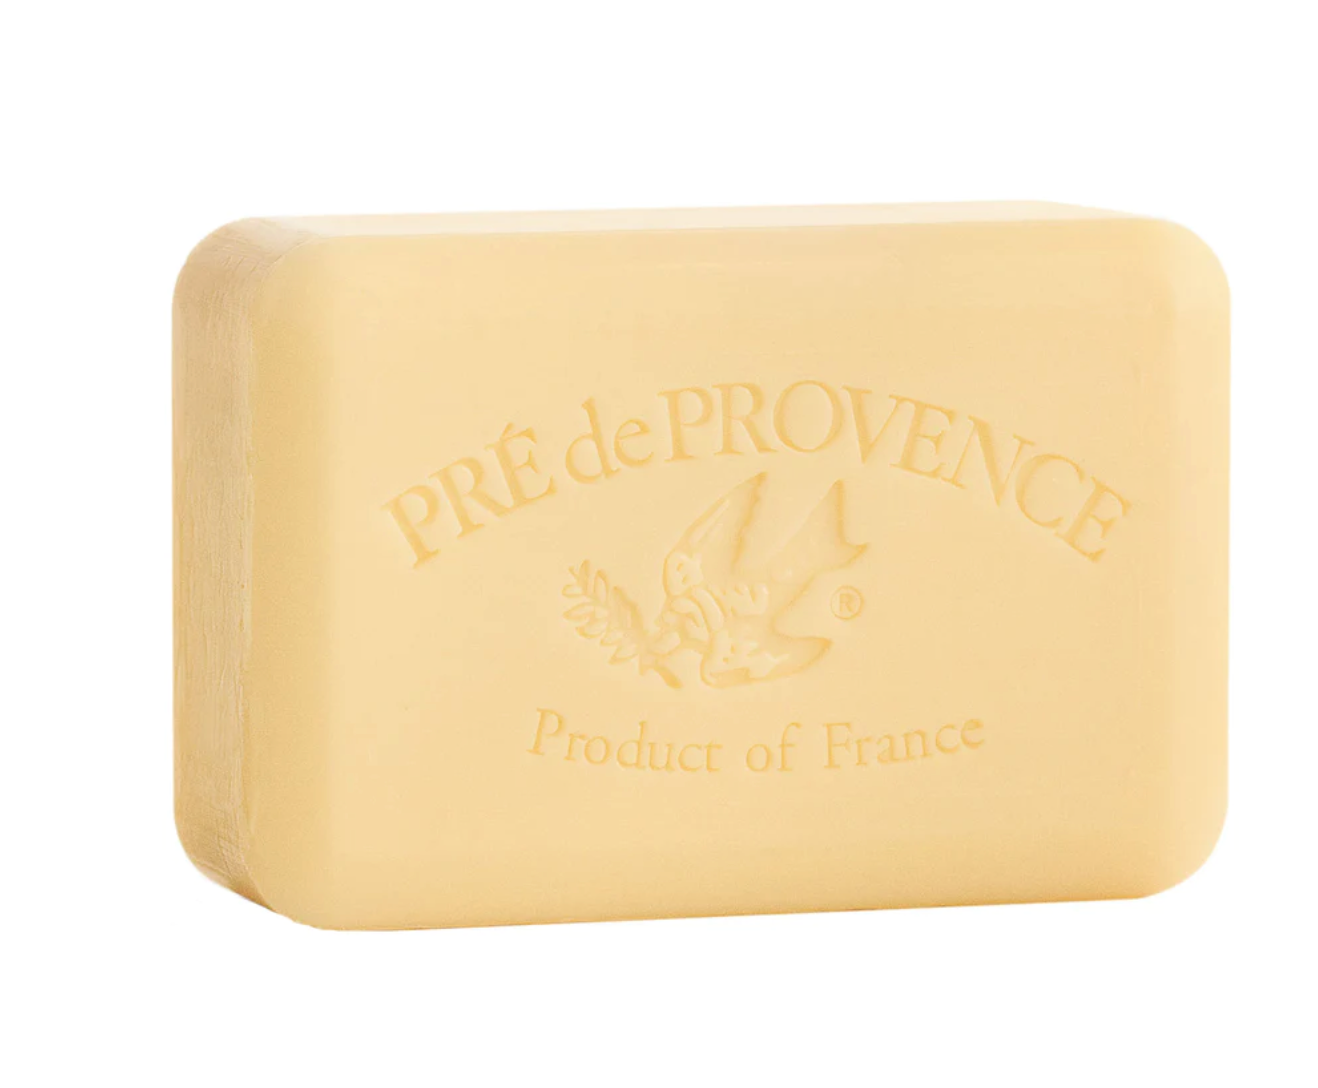 Agrumes soap bar by Pré de Provence